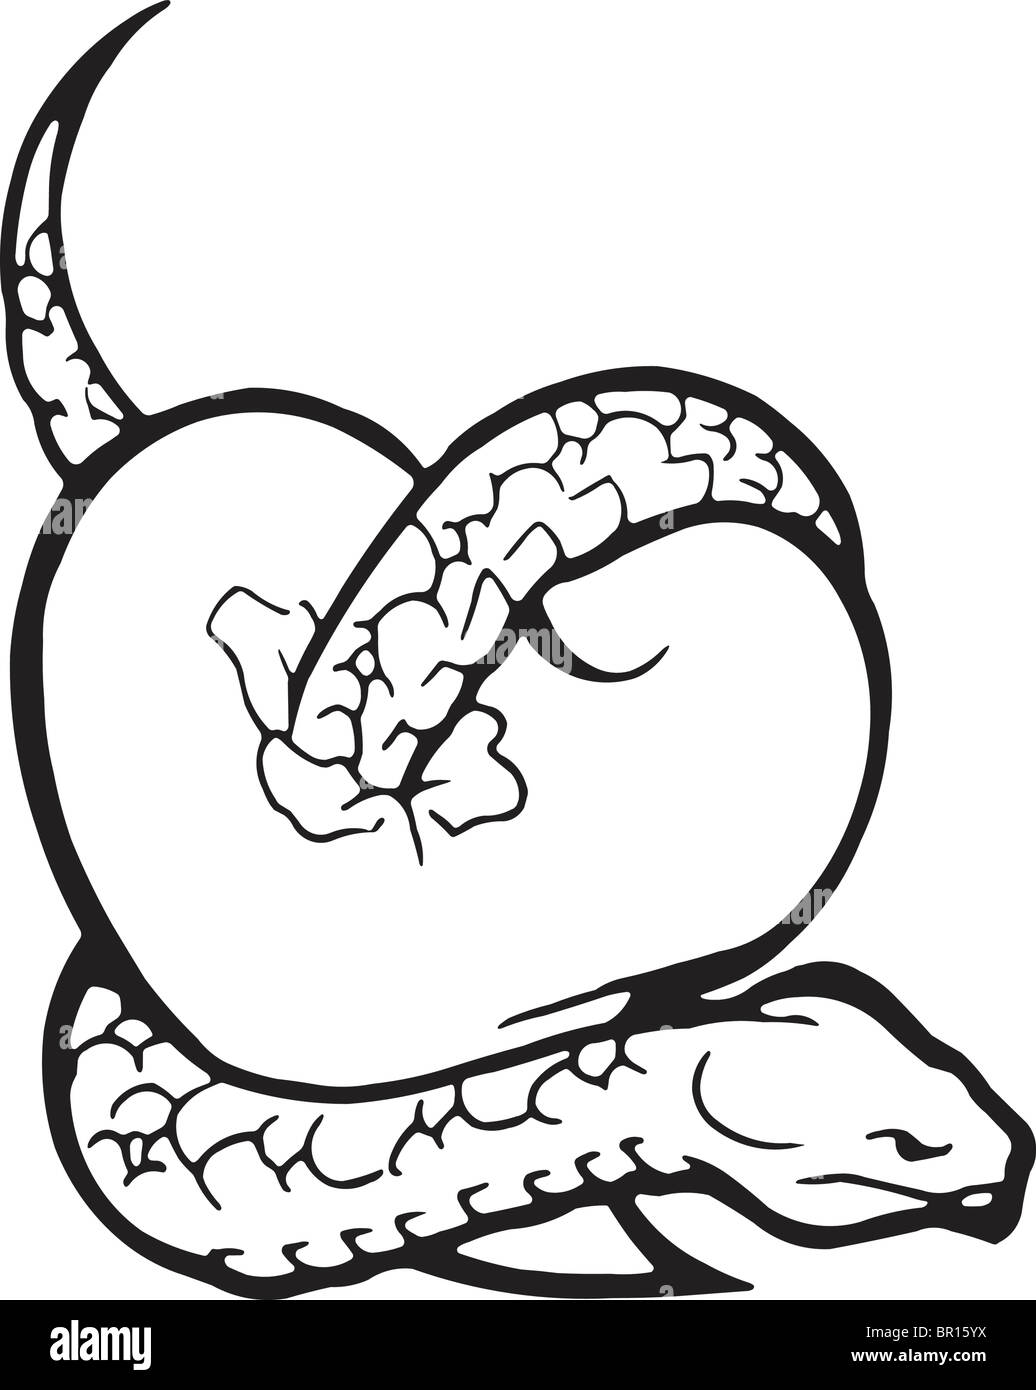 Eine schwarz-weiß Version eines Herzens mit einer Schlange umwickelt Stockfoto